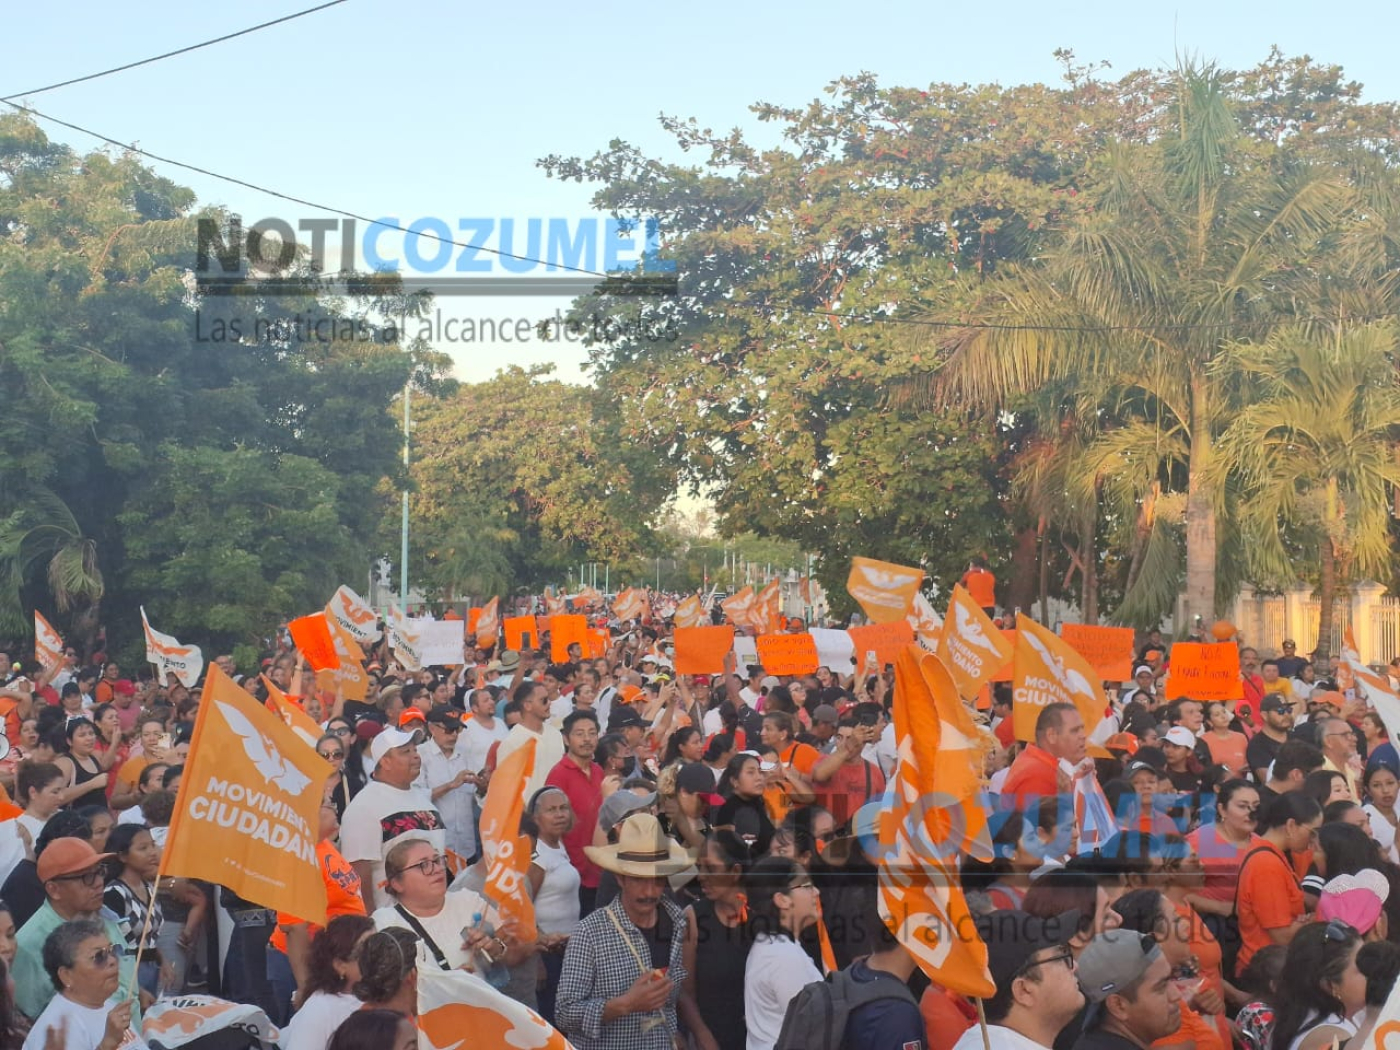 Movilización ciudadana en Chetumal a favor de Lidia Rojas Fabro, acusan fraude electoral